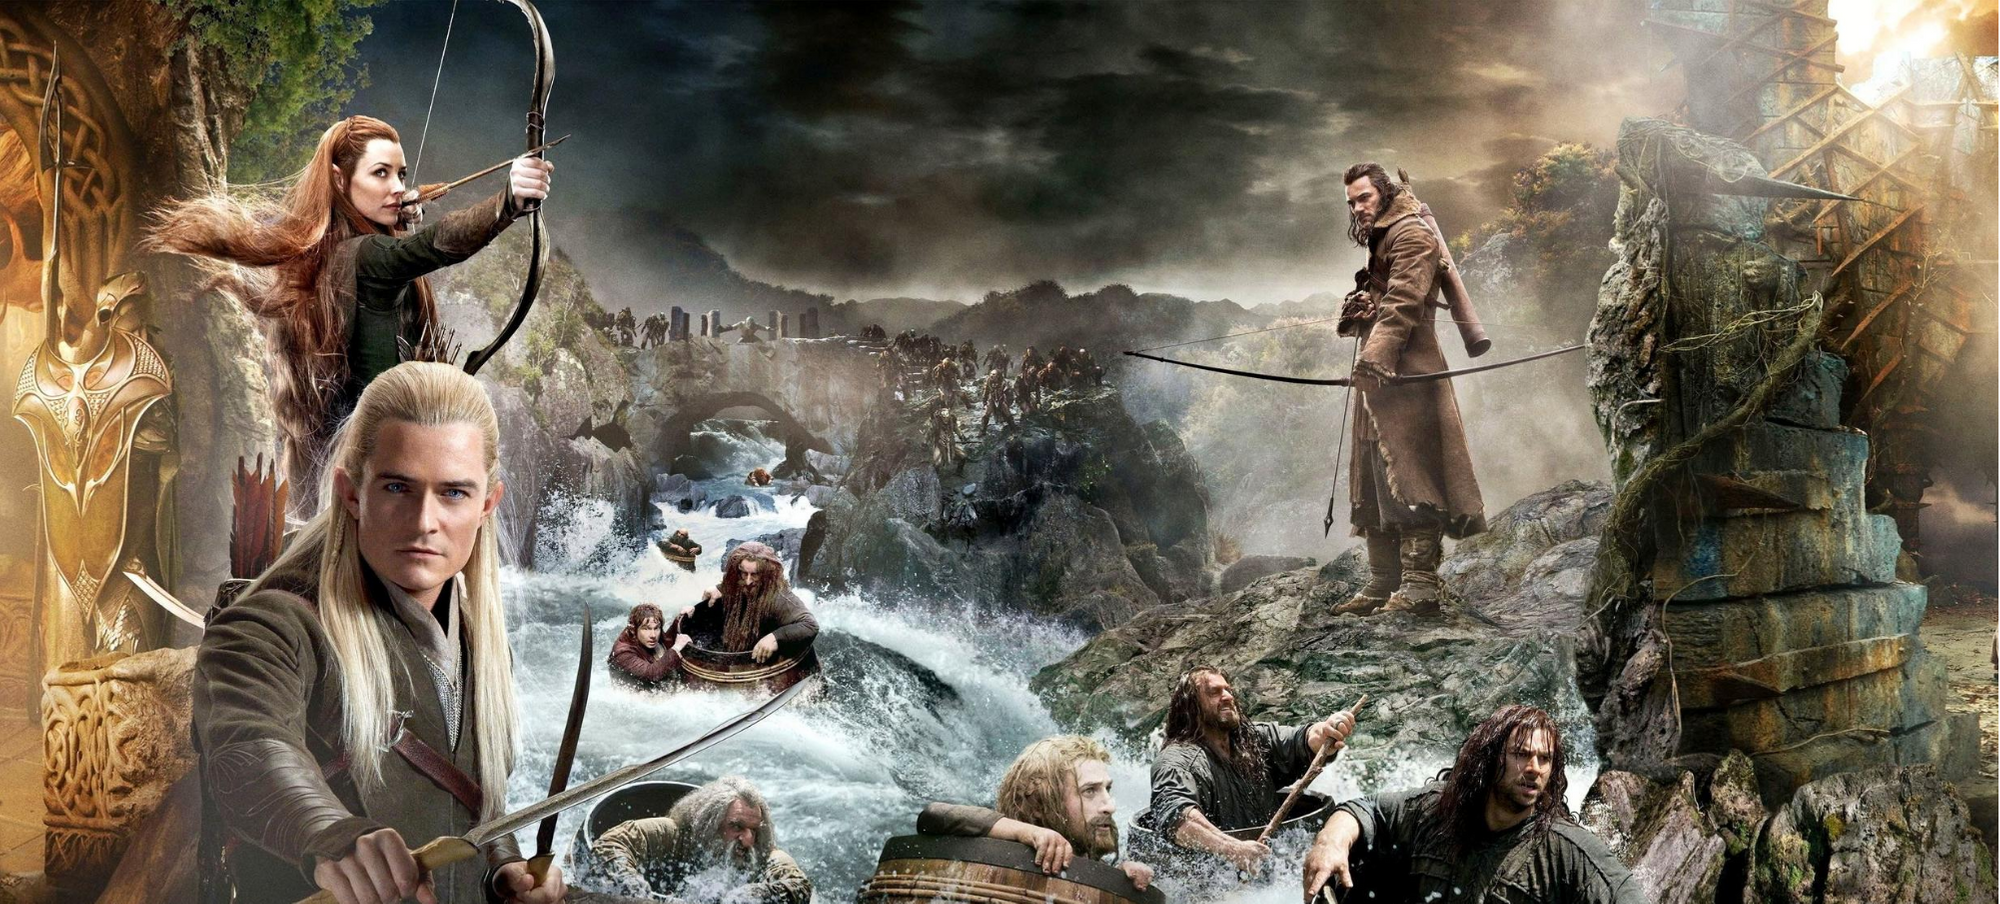 Le Hobbit - La desolation de Smaug.png